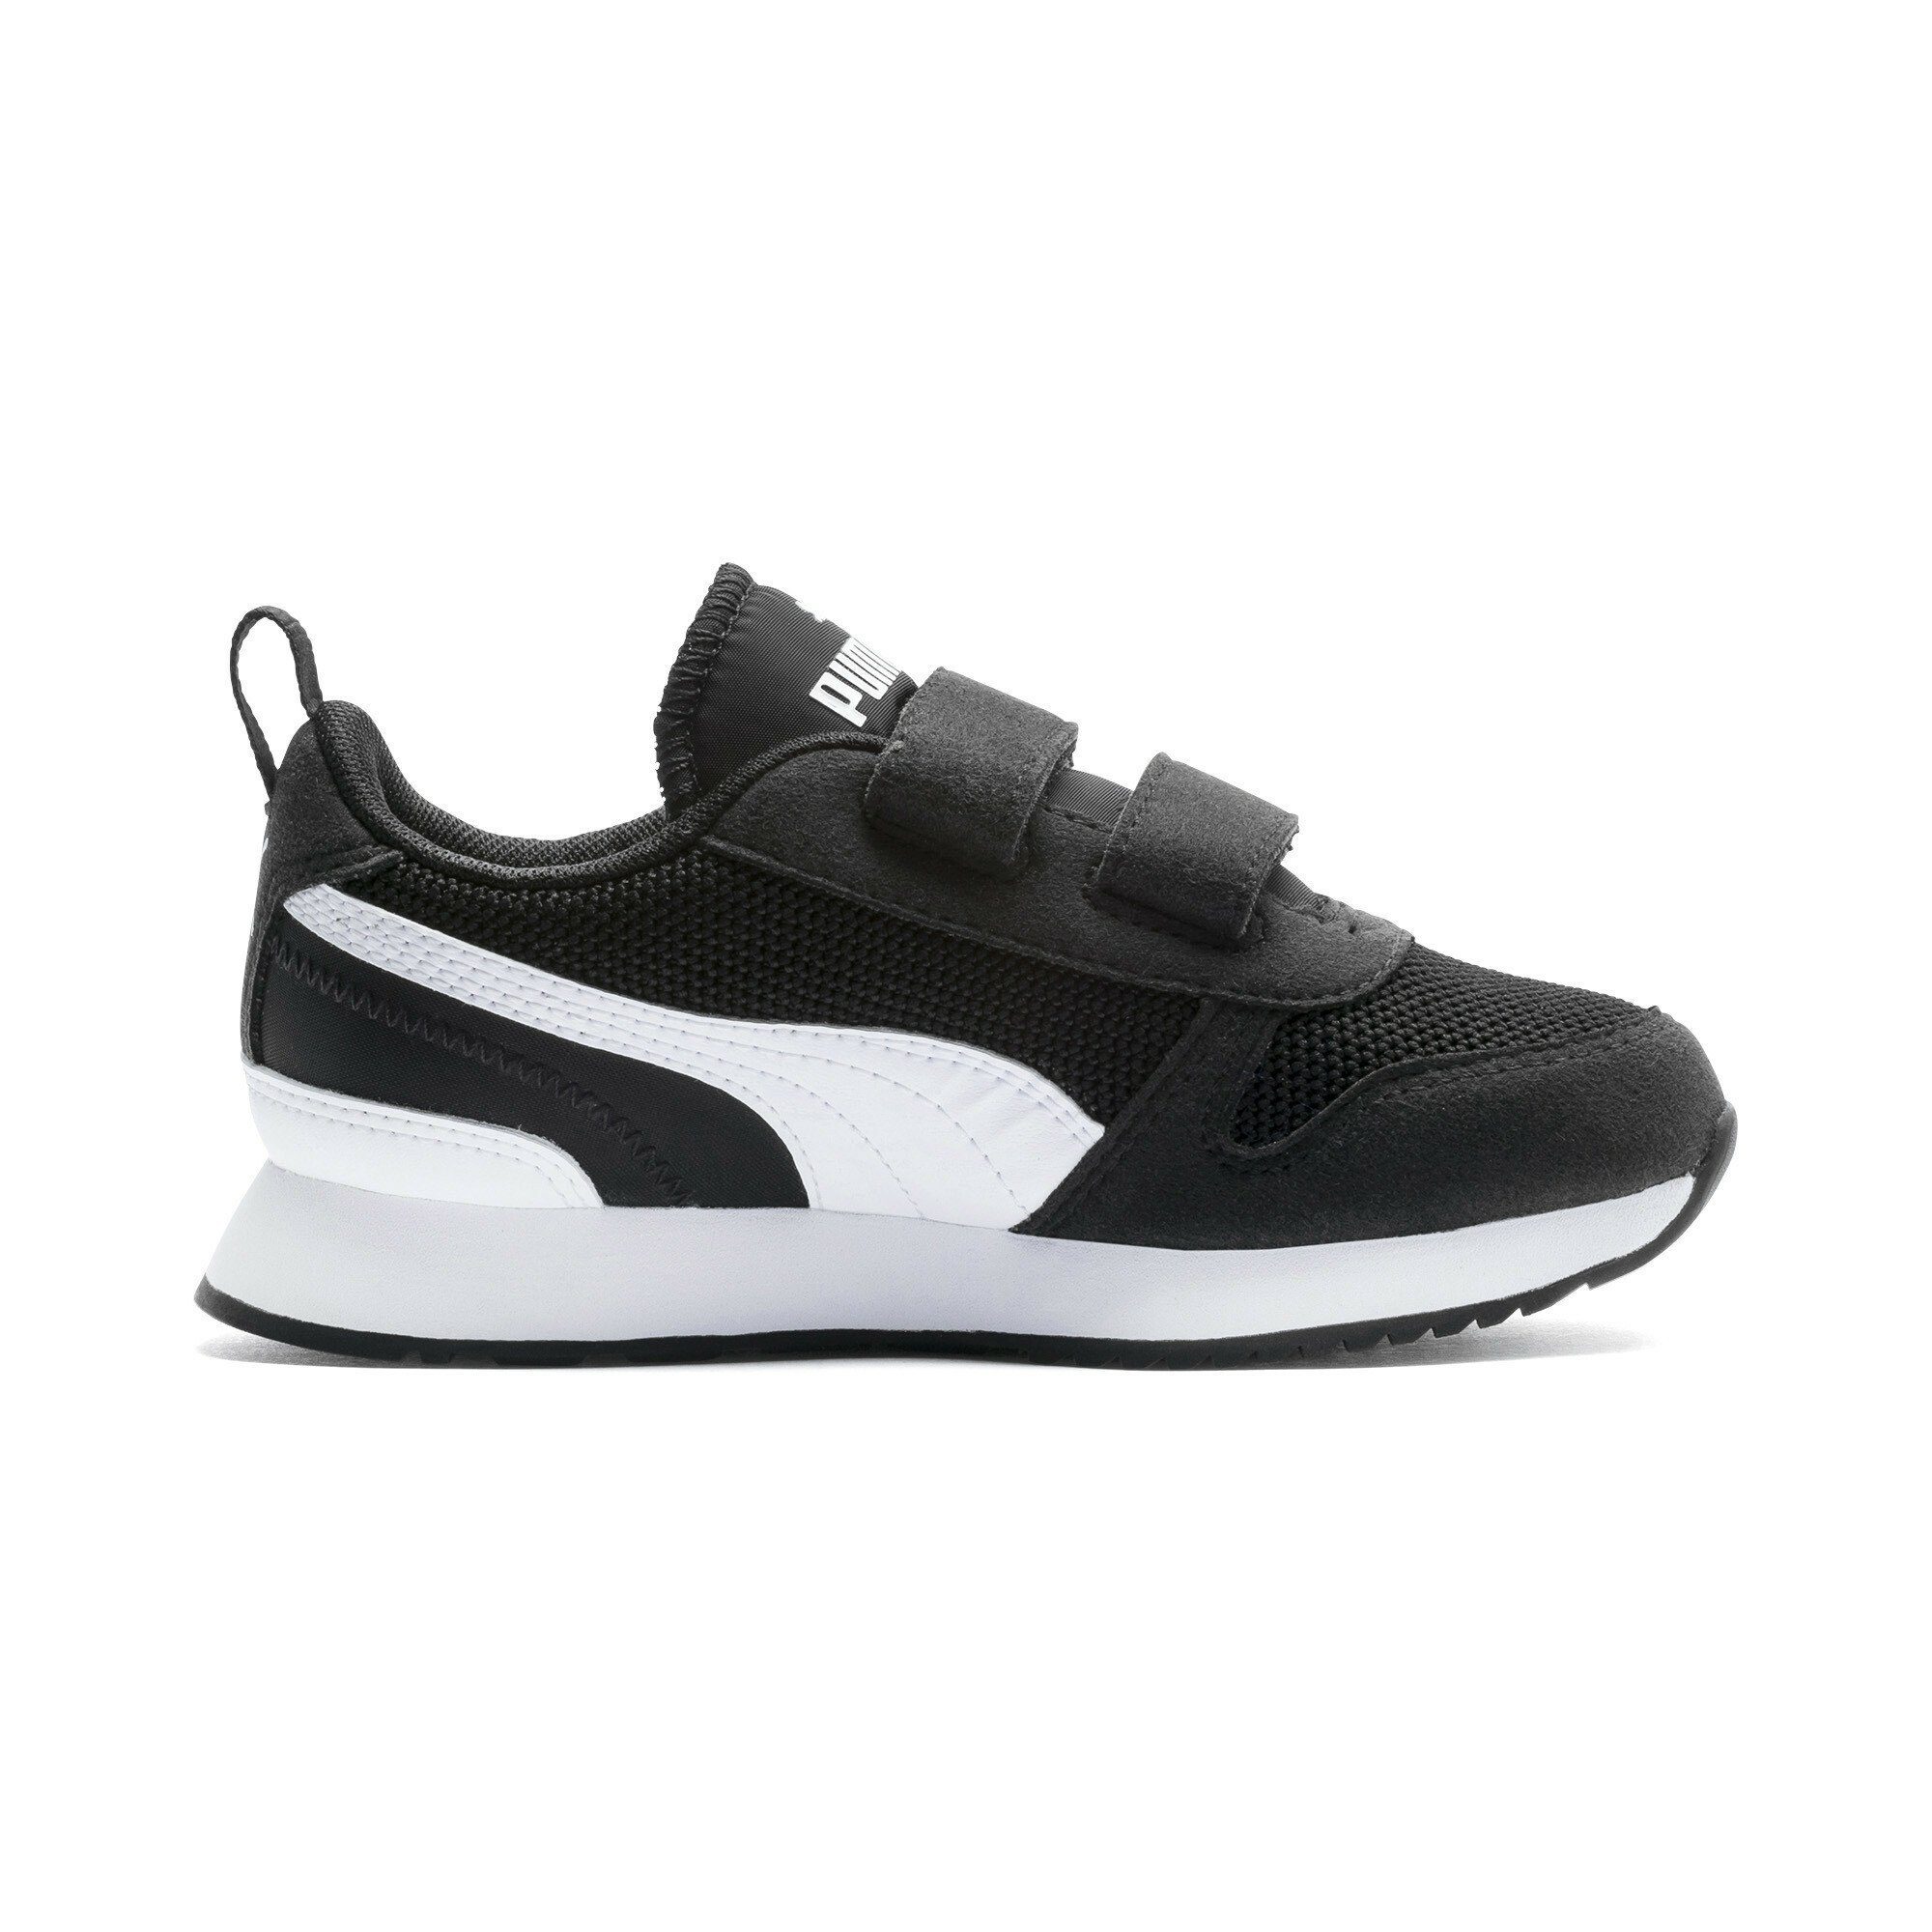 PUMA Black White Sneaker Laufschuh R78 Jugendliche